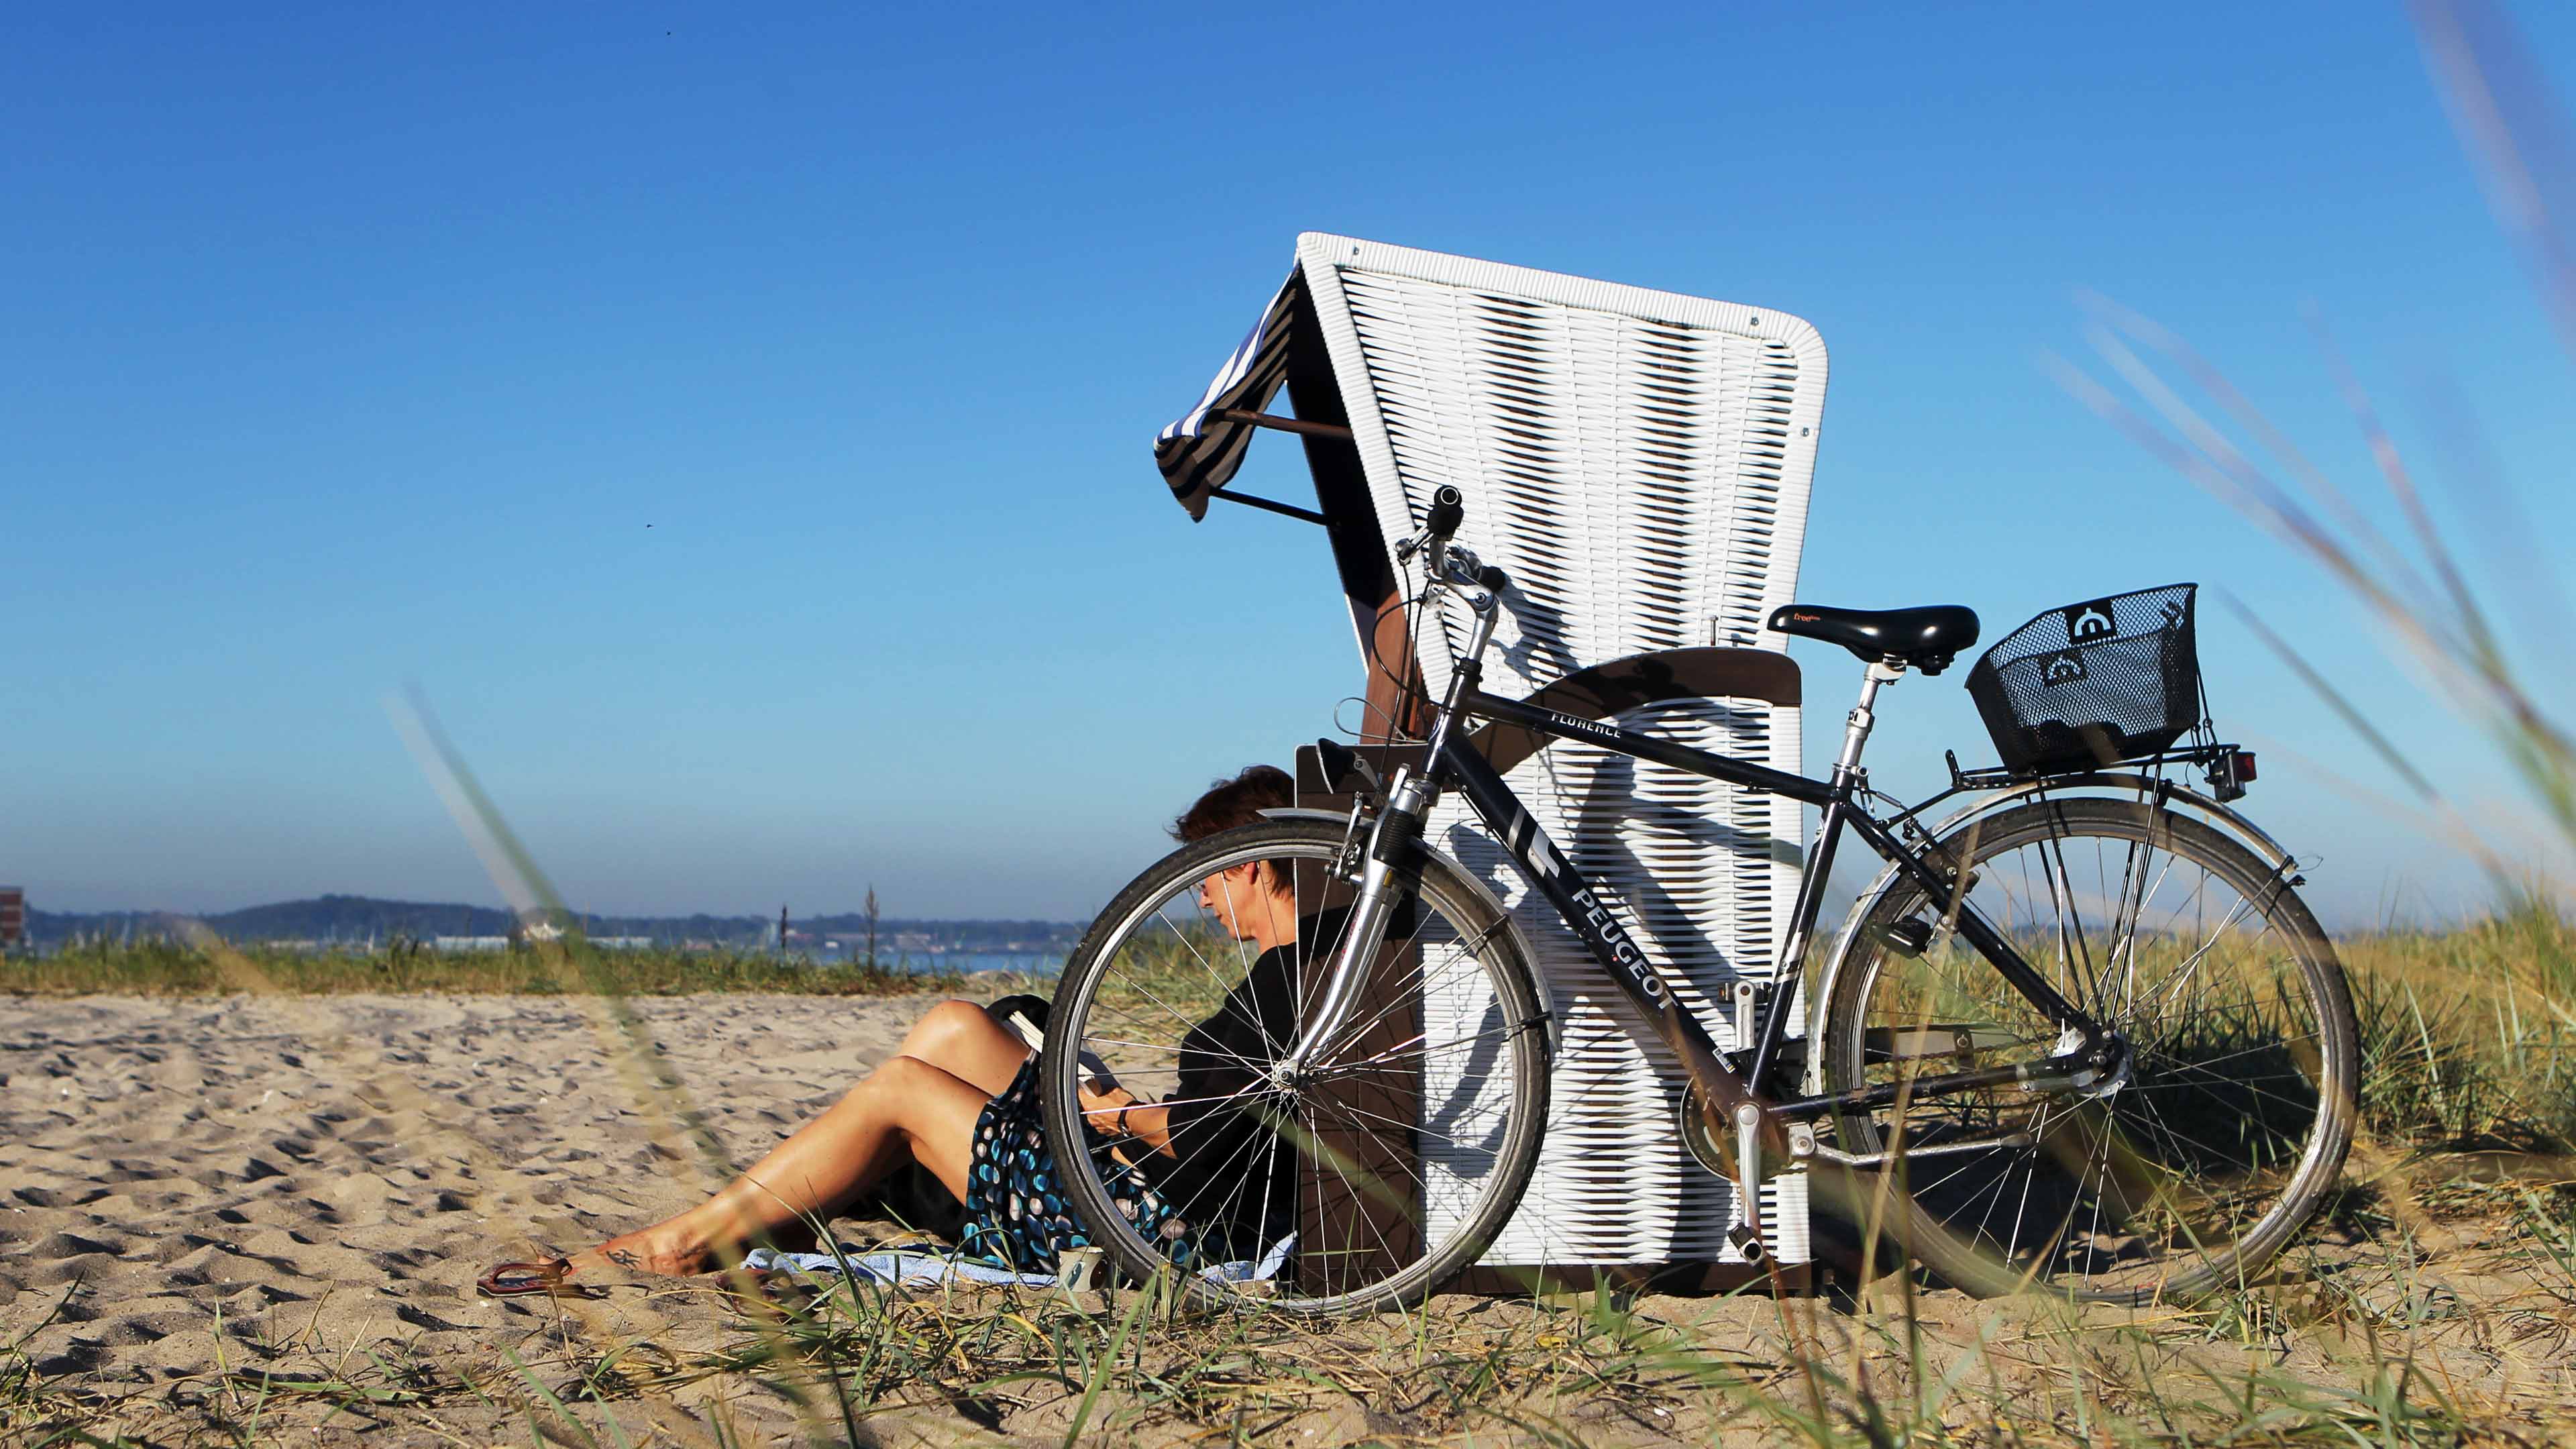 Fahrrad lehnt an weißem Strandkorb, davor sitzt eine lesende Frau